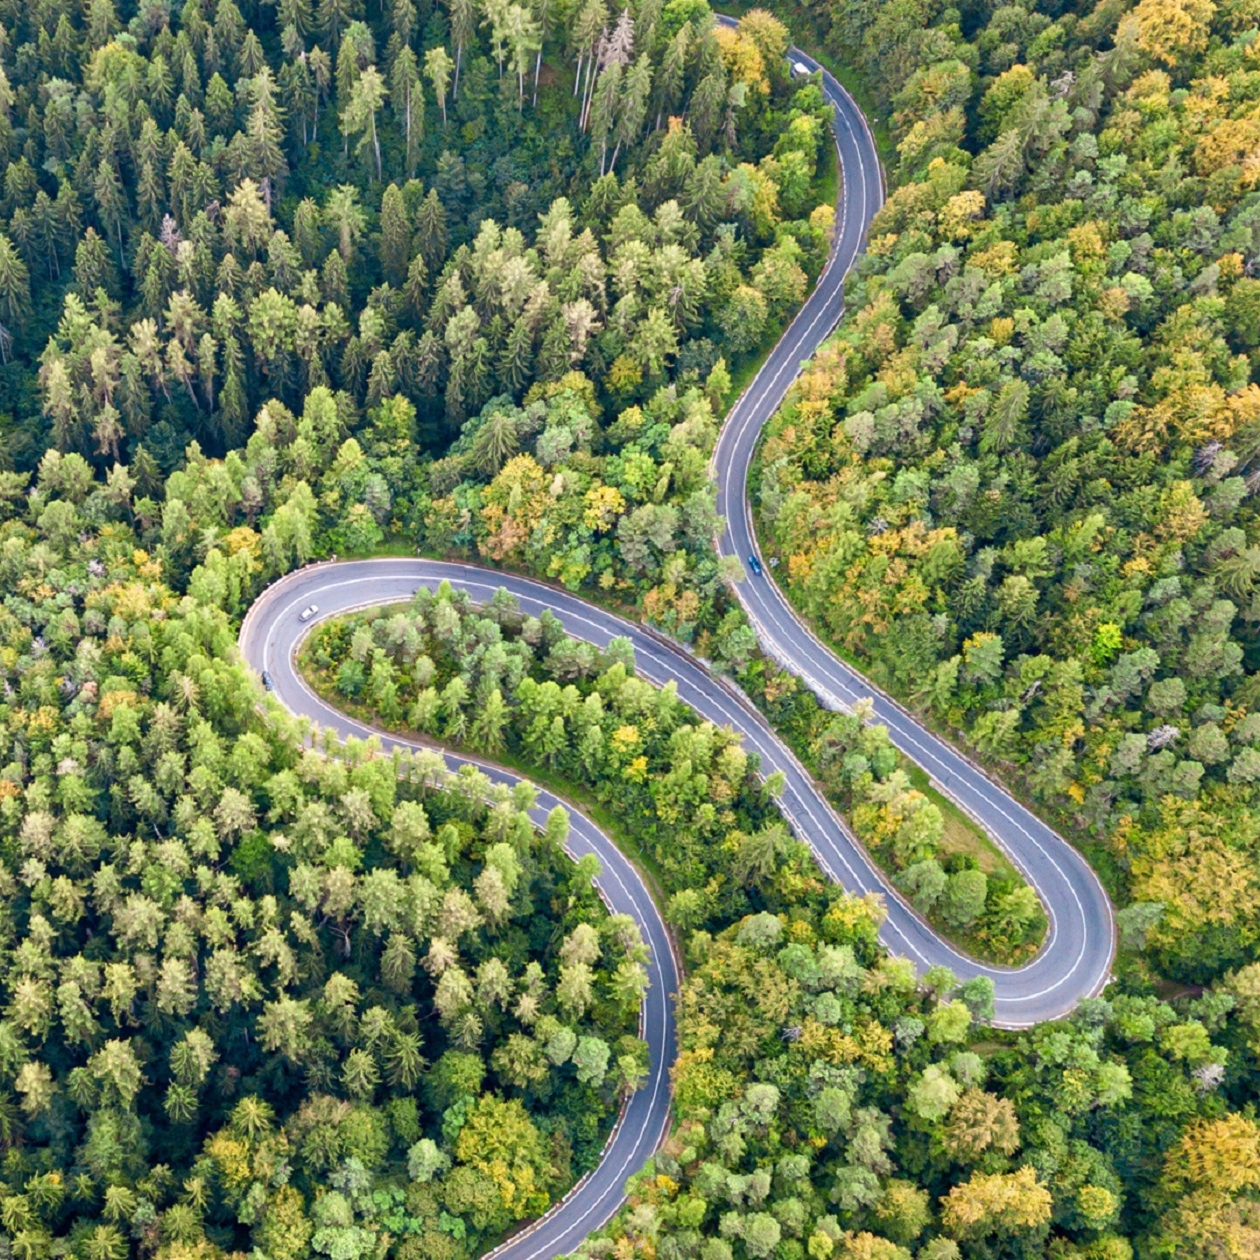 Kręta droga prowadząca przez las